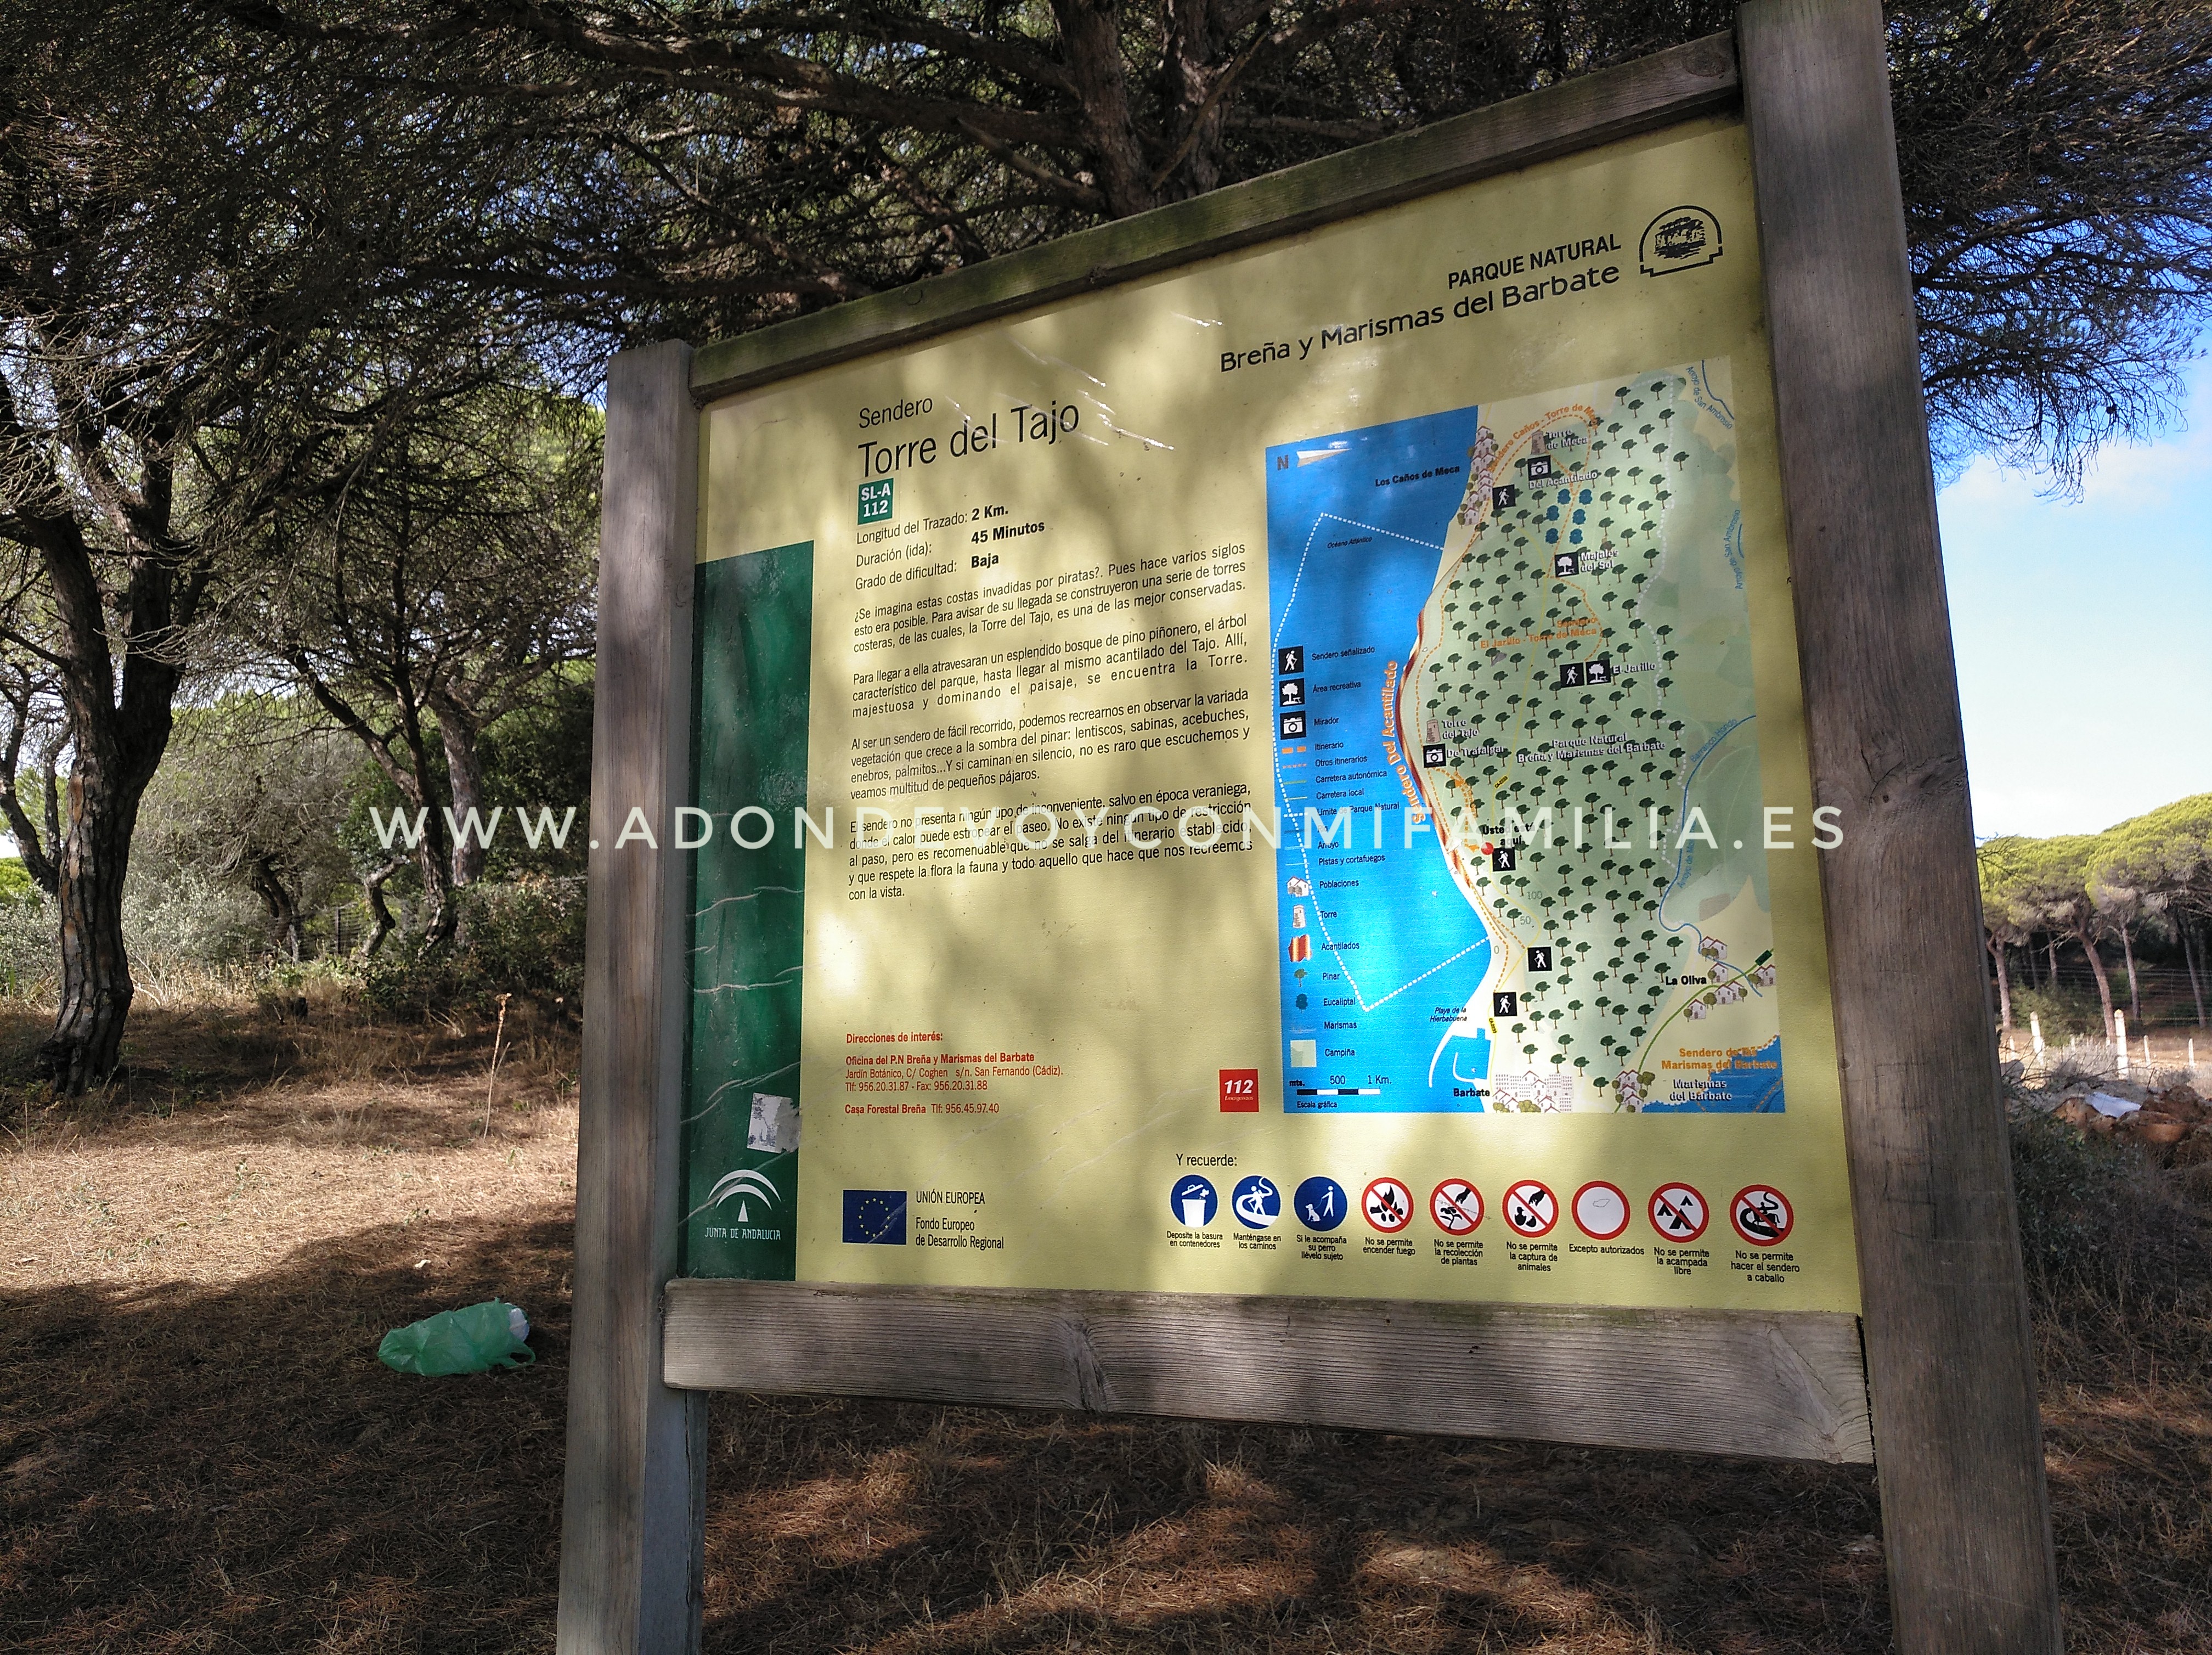 SENDERO TORRE DEL TAJO | Parque Natural de Las Breñas y Marismas de Barbate